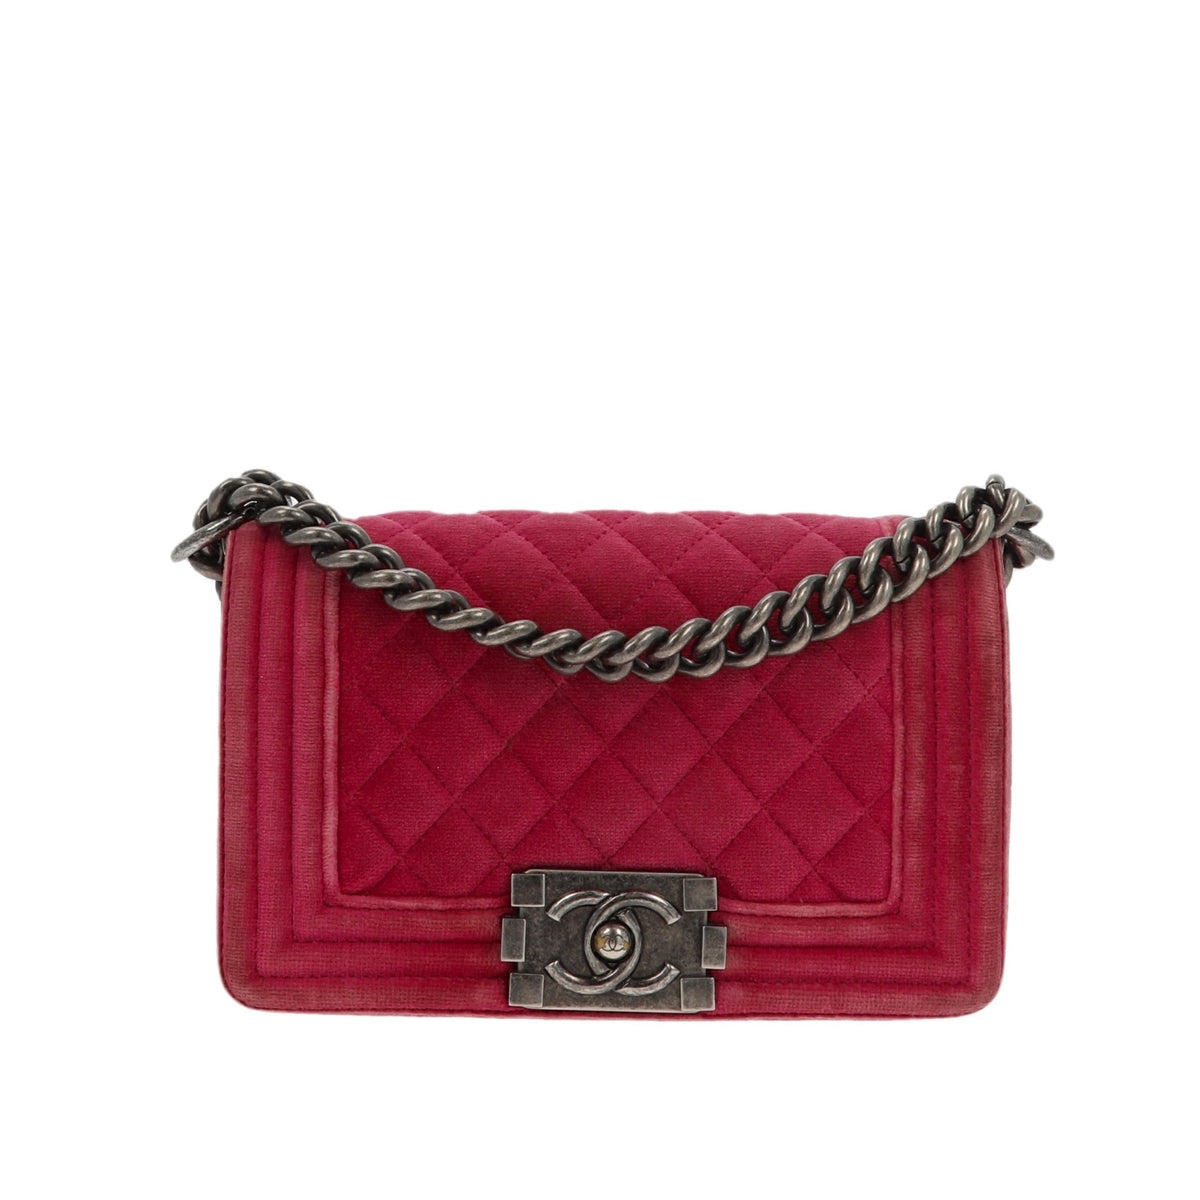 Chanel Boy Shoulder Bag in Pink Velvet – Fancy Lux